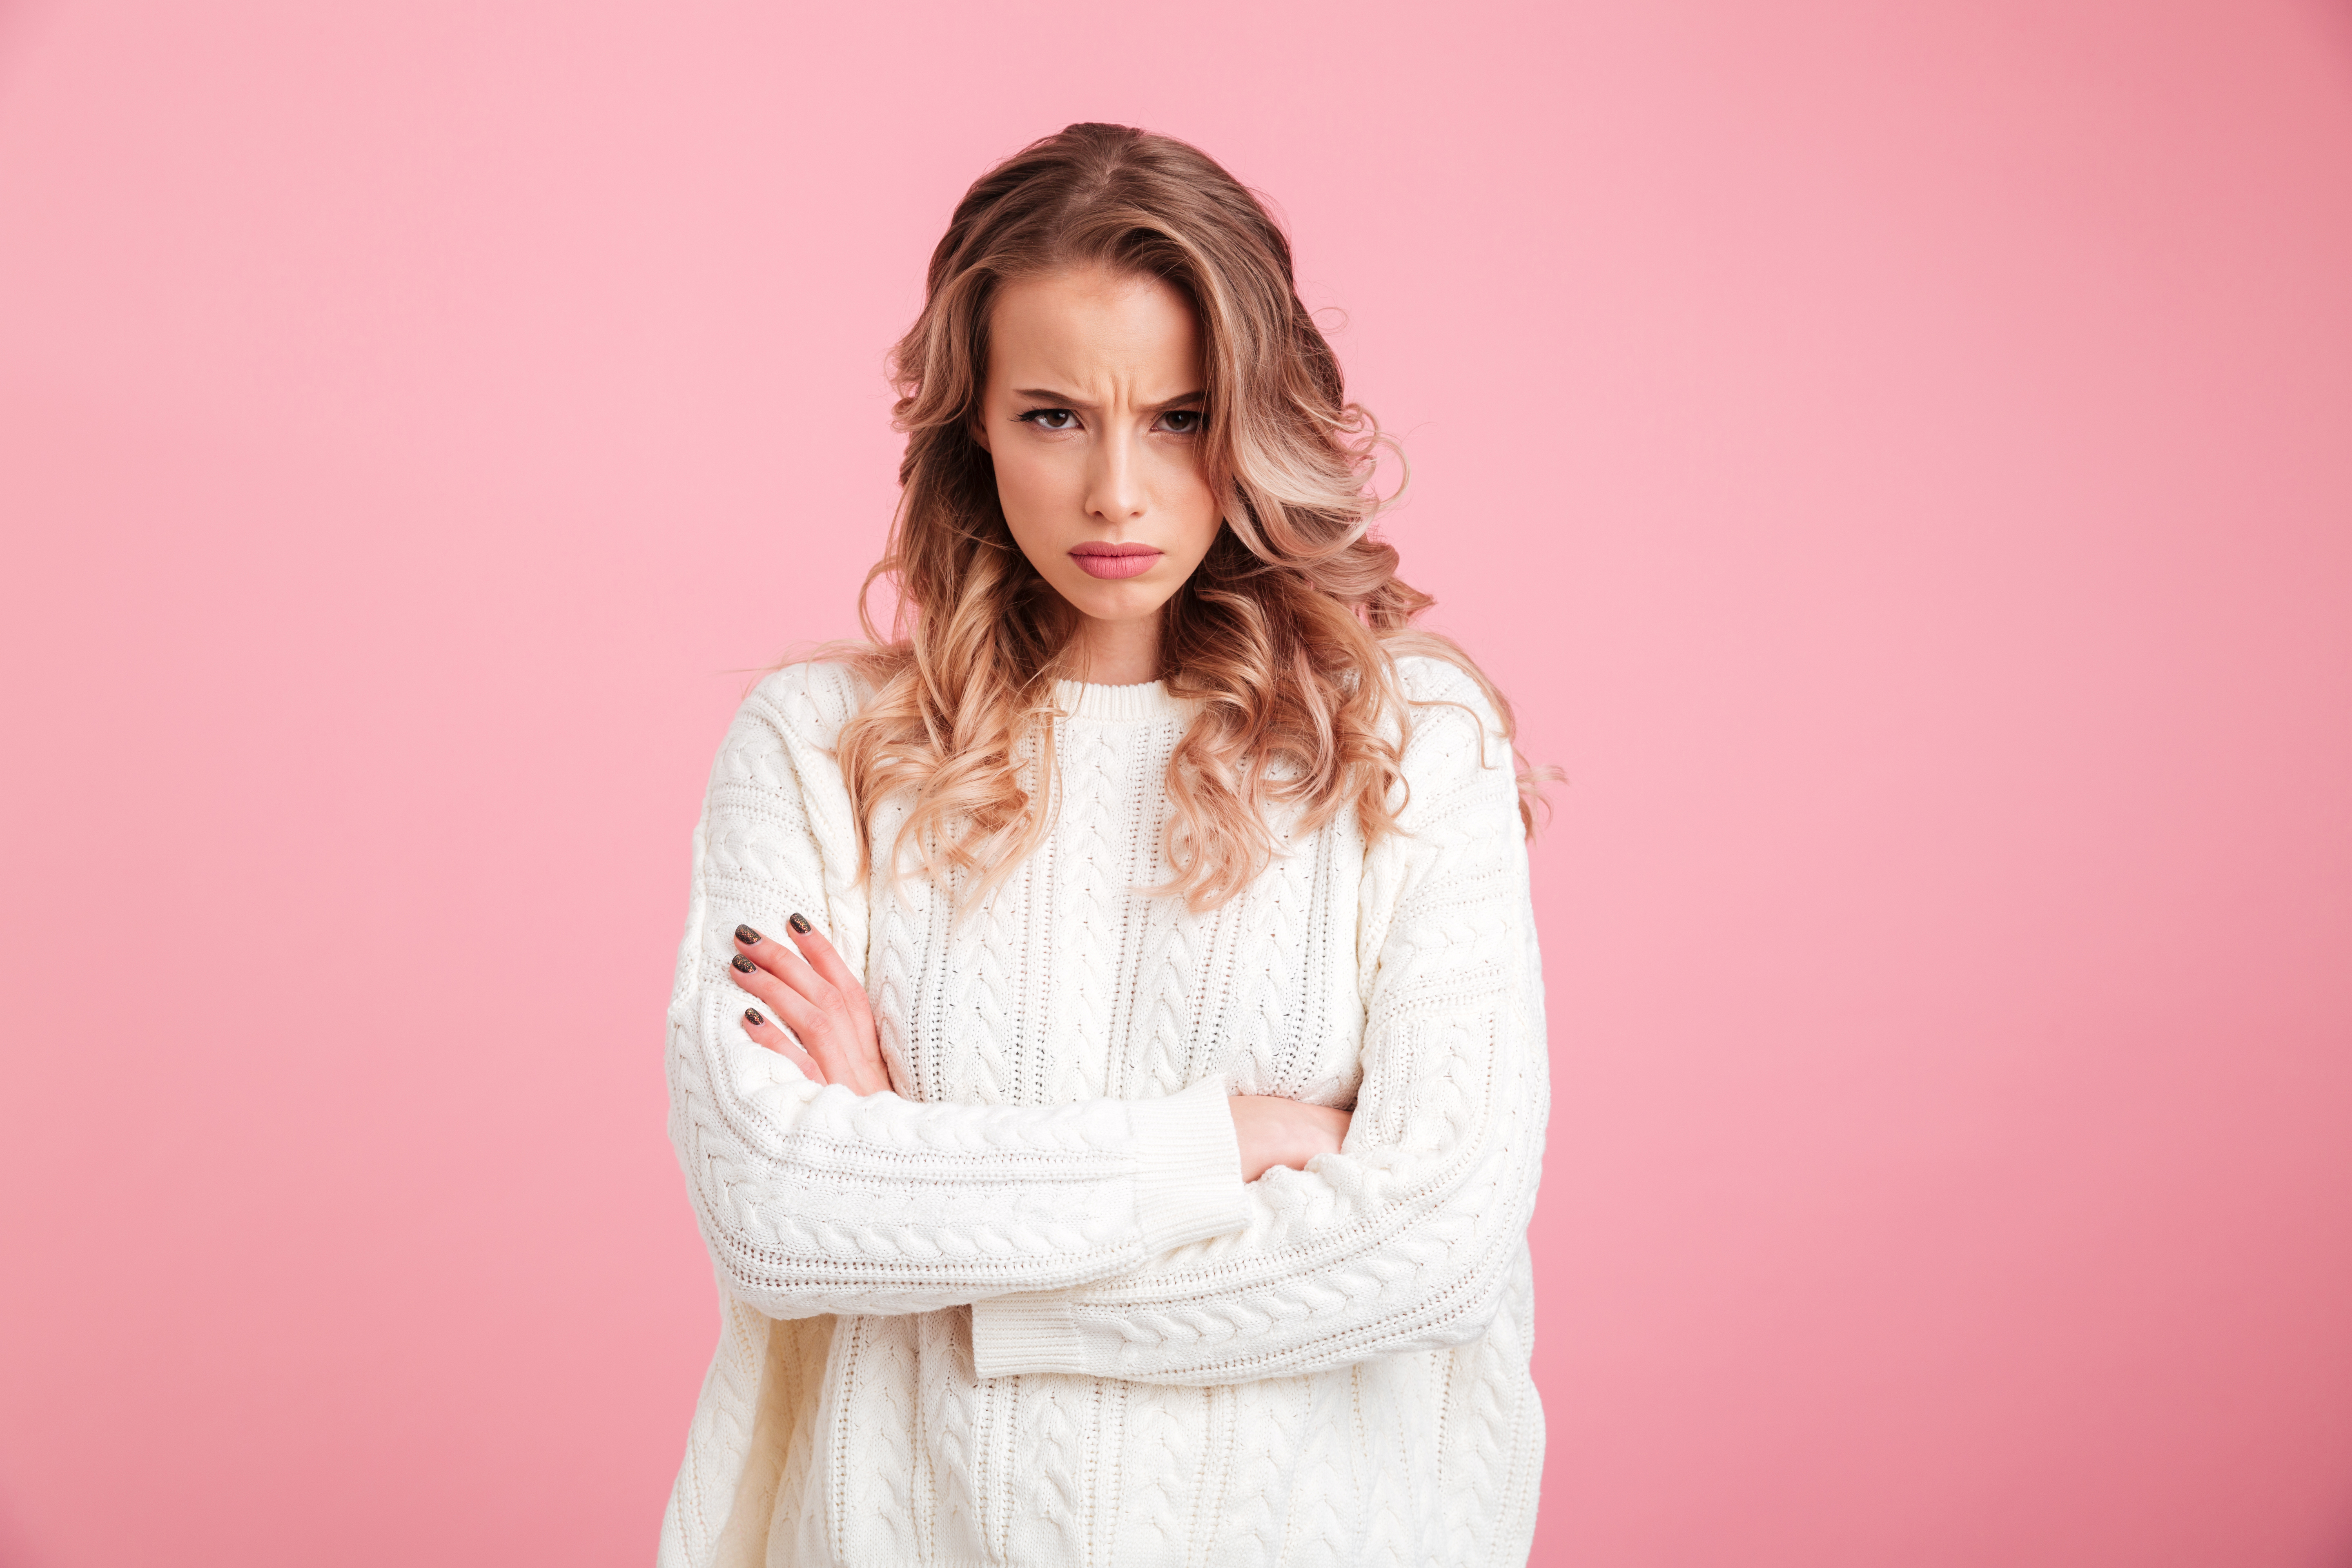 Une fille en colère avec les bras croisés | Source : Shutterstock